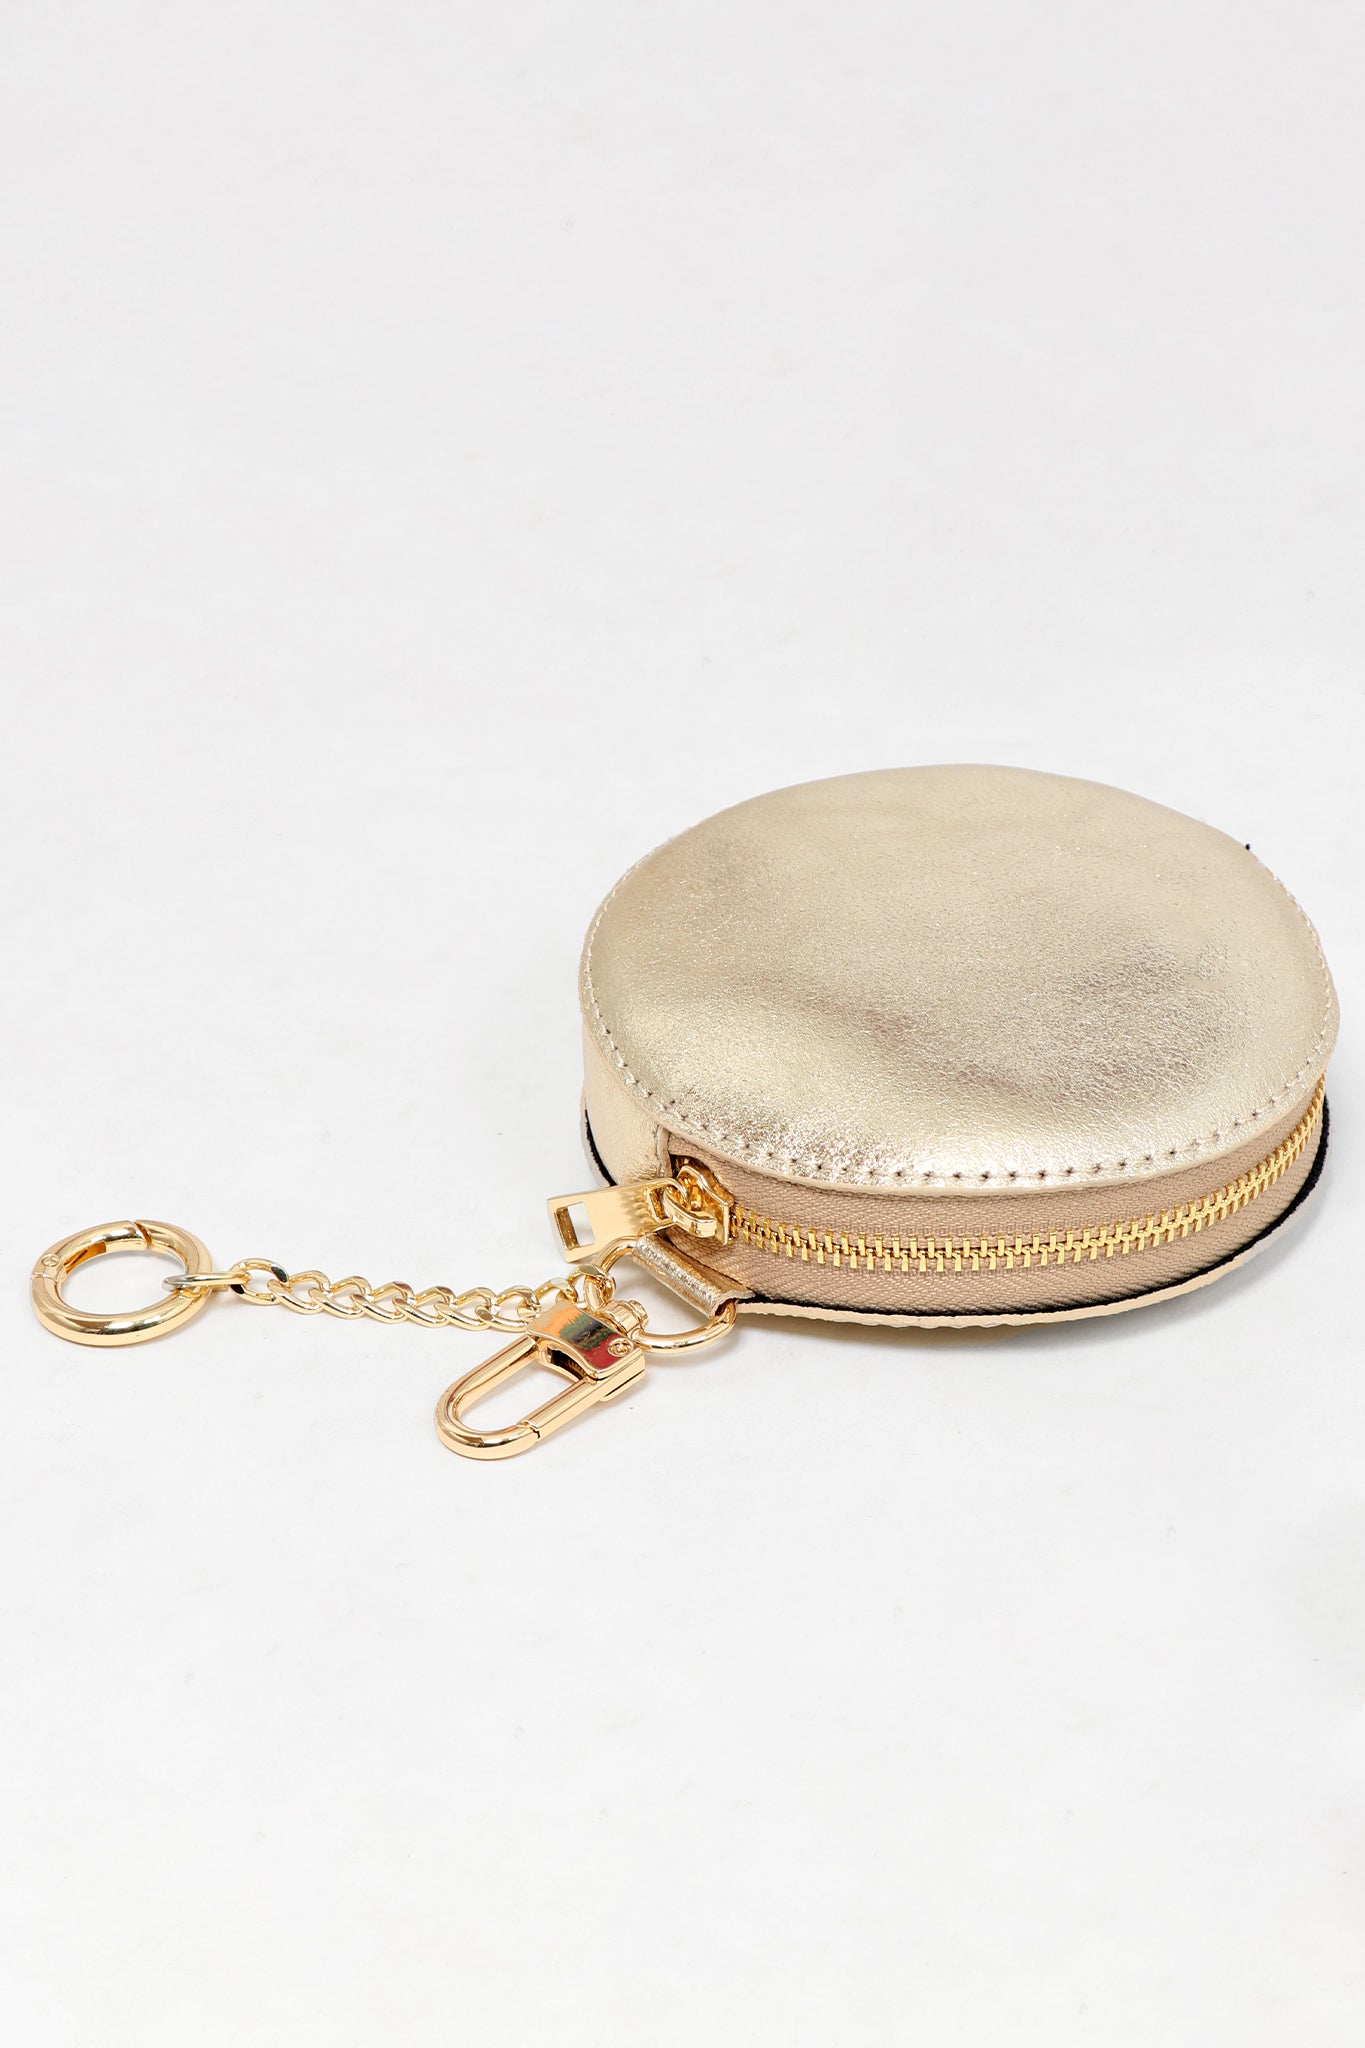 Leather Coin Purse Men Women Vintage Round Creative Storage Money Bag  Keychain